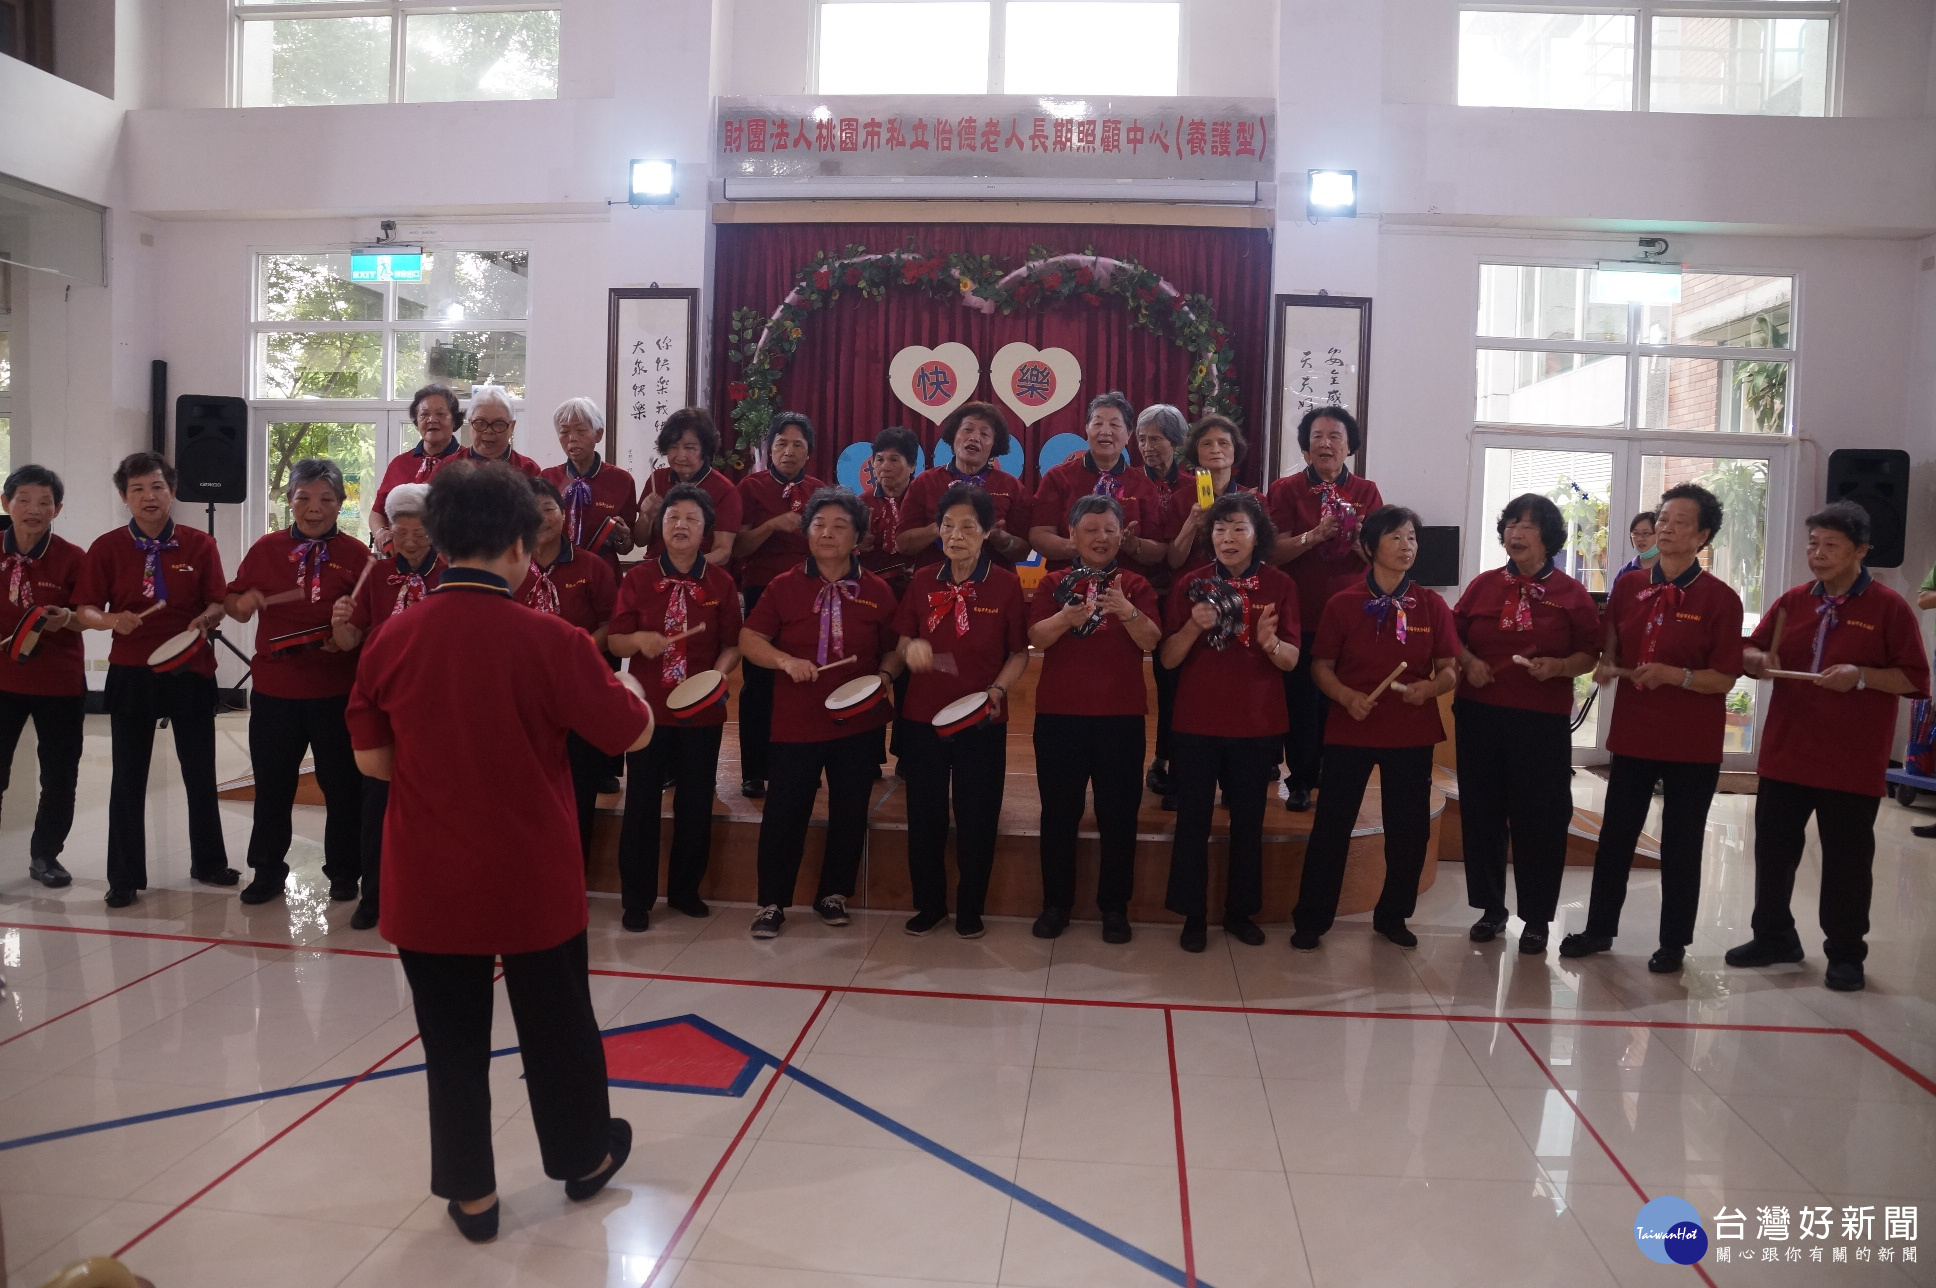 楊梅區大合不老樂團，拜訪成立九年的怡德老人長照中心向陽打擊樂團，雙方交流氣氛熱烈。